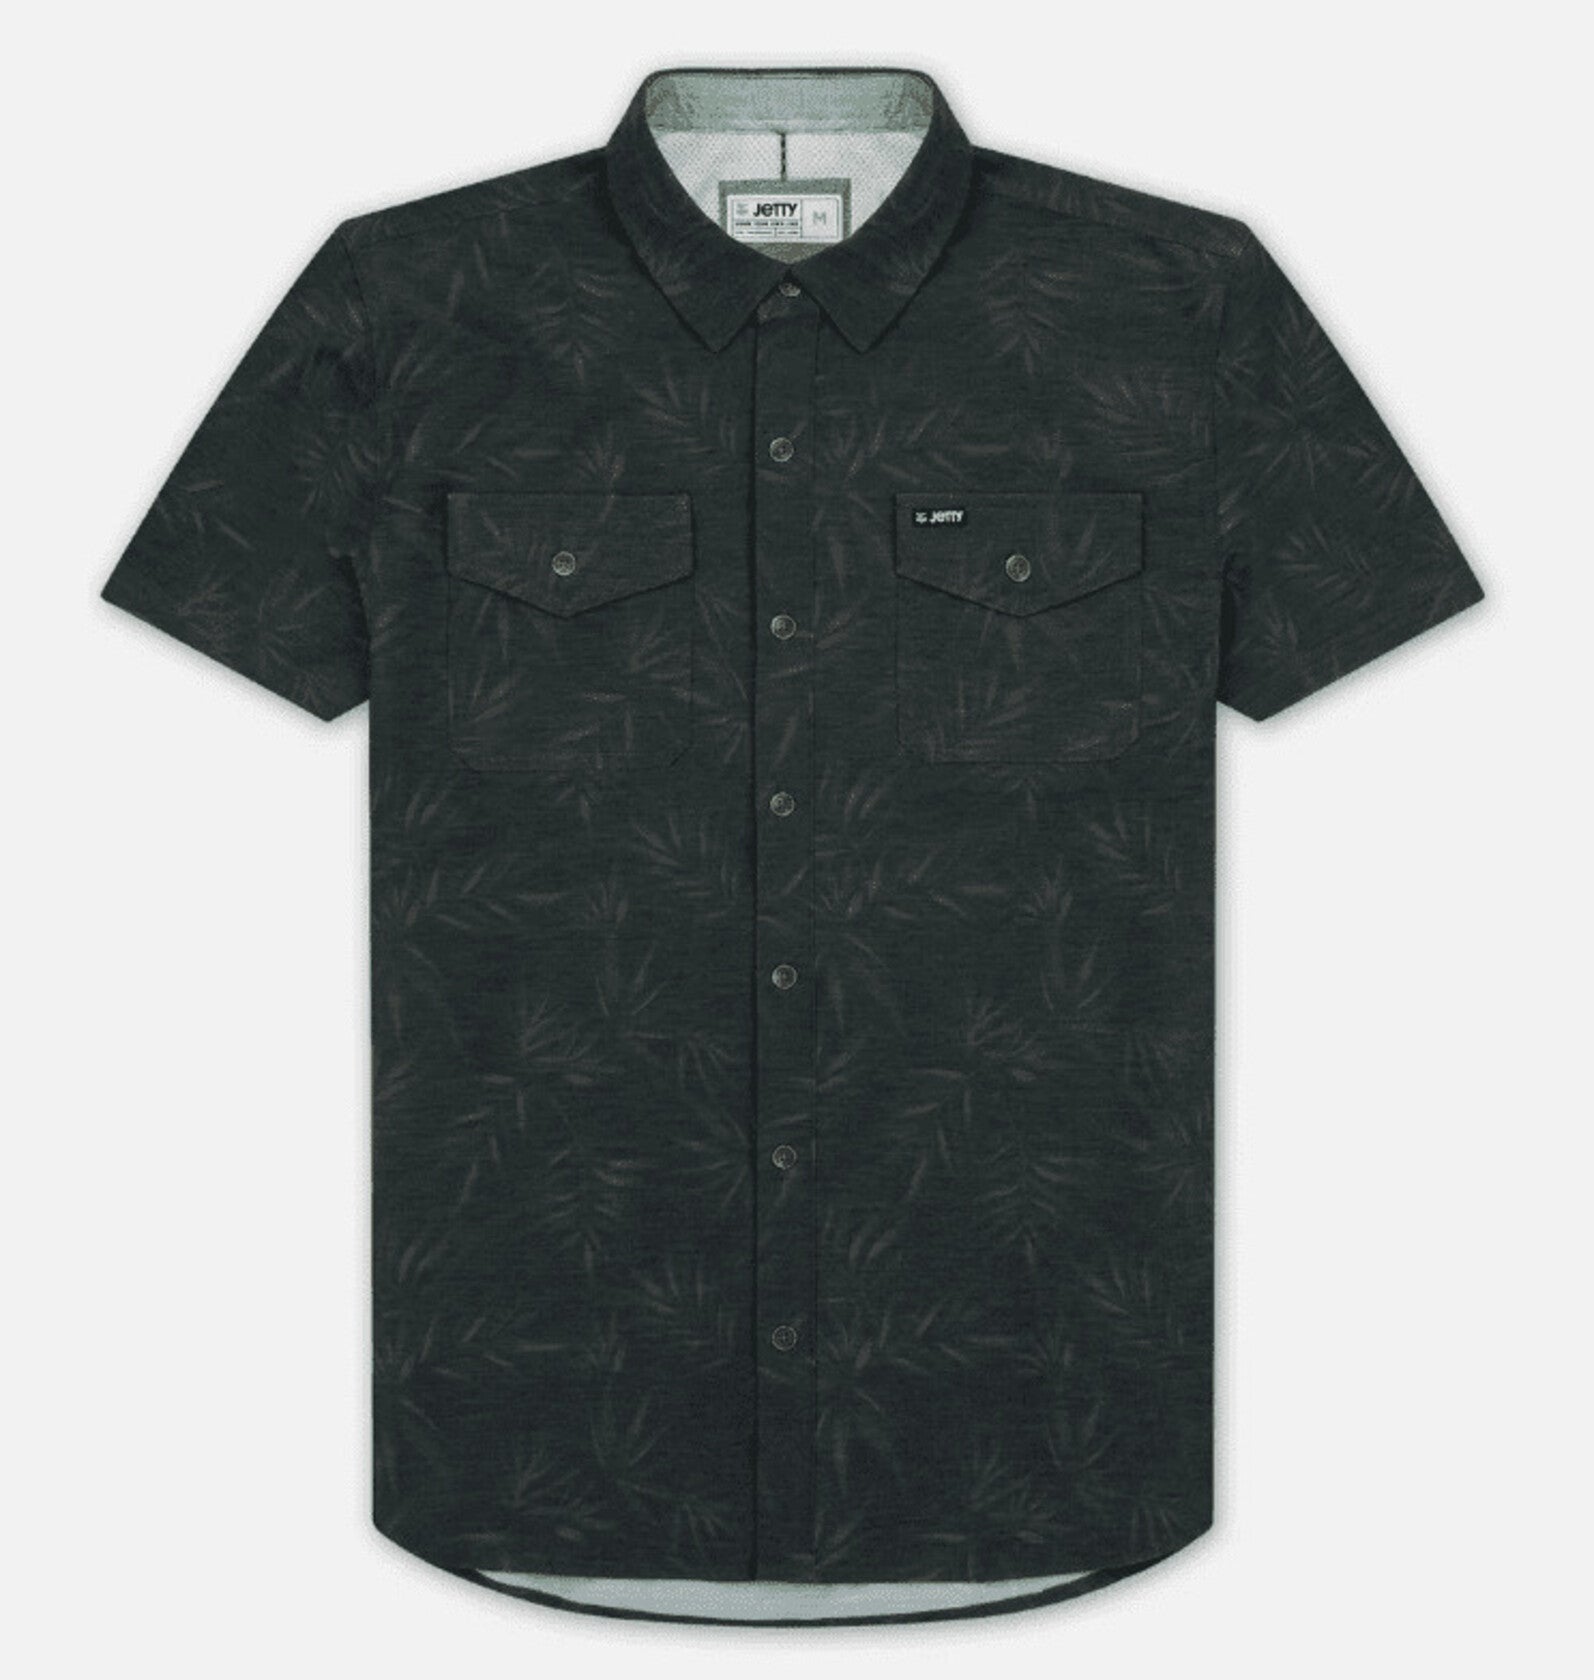 Wellspoint Woven Shirt- Carbon